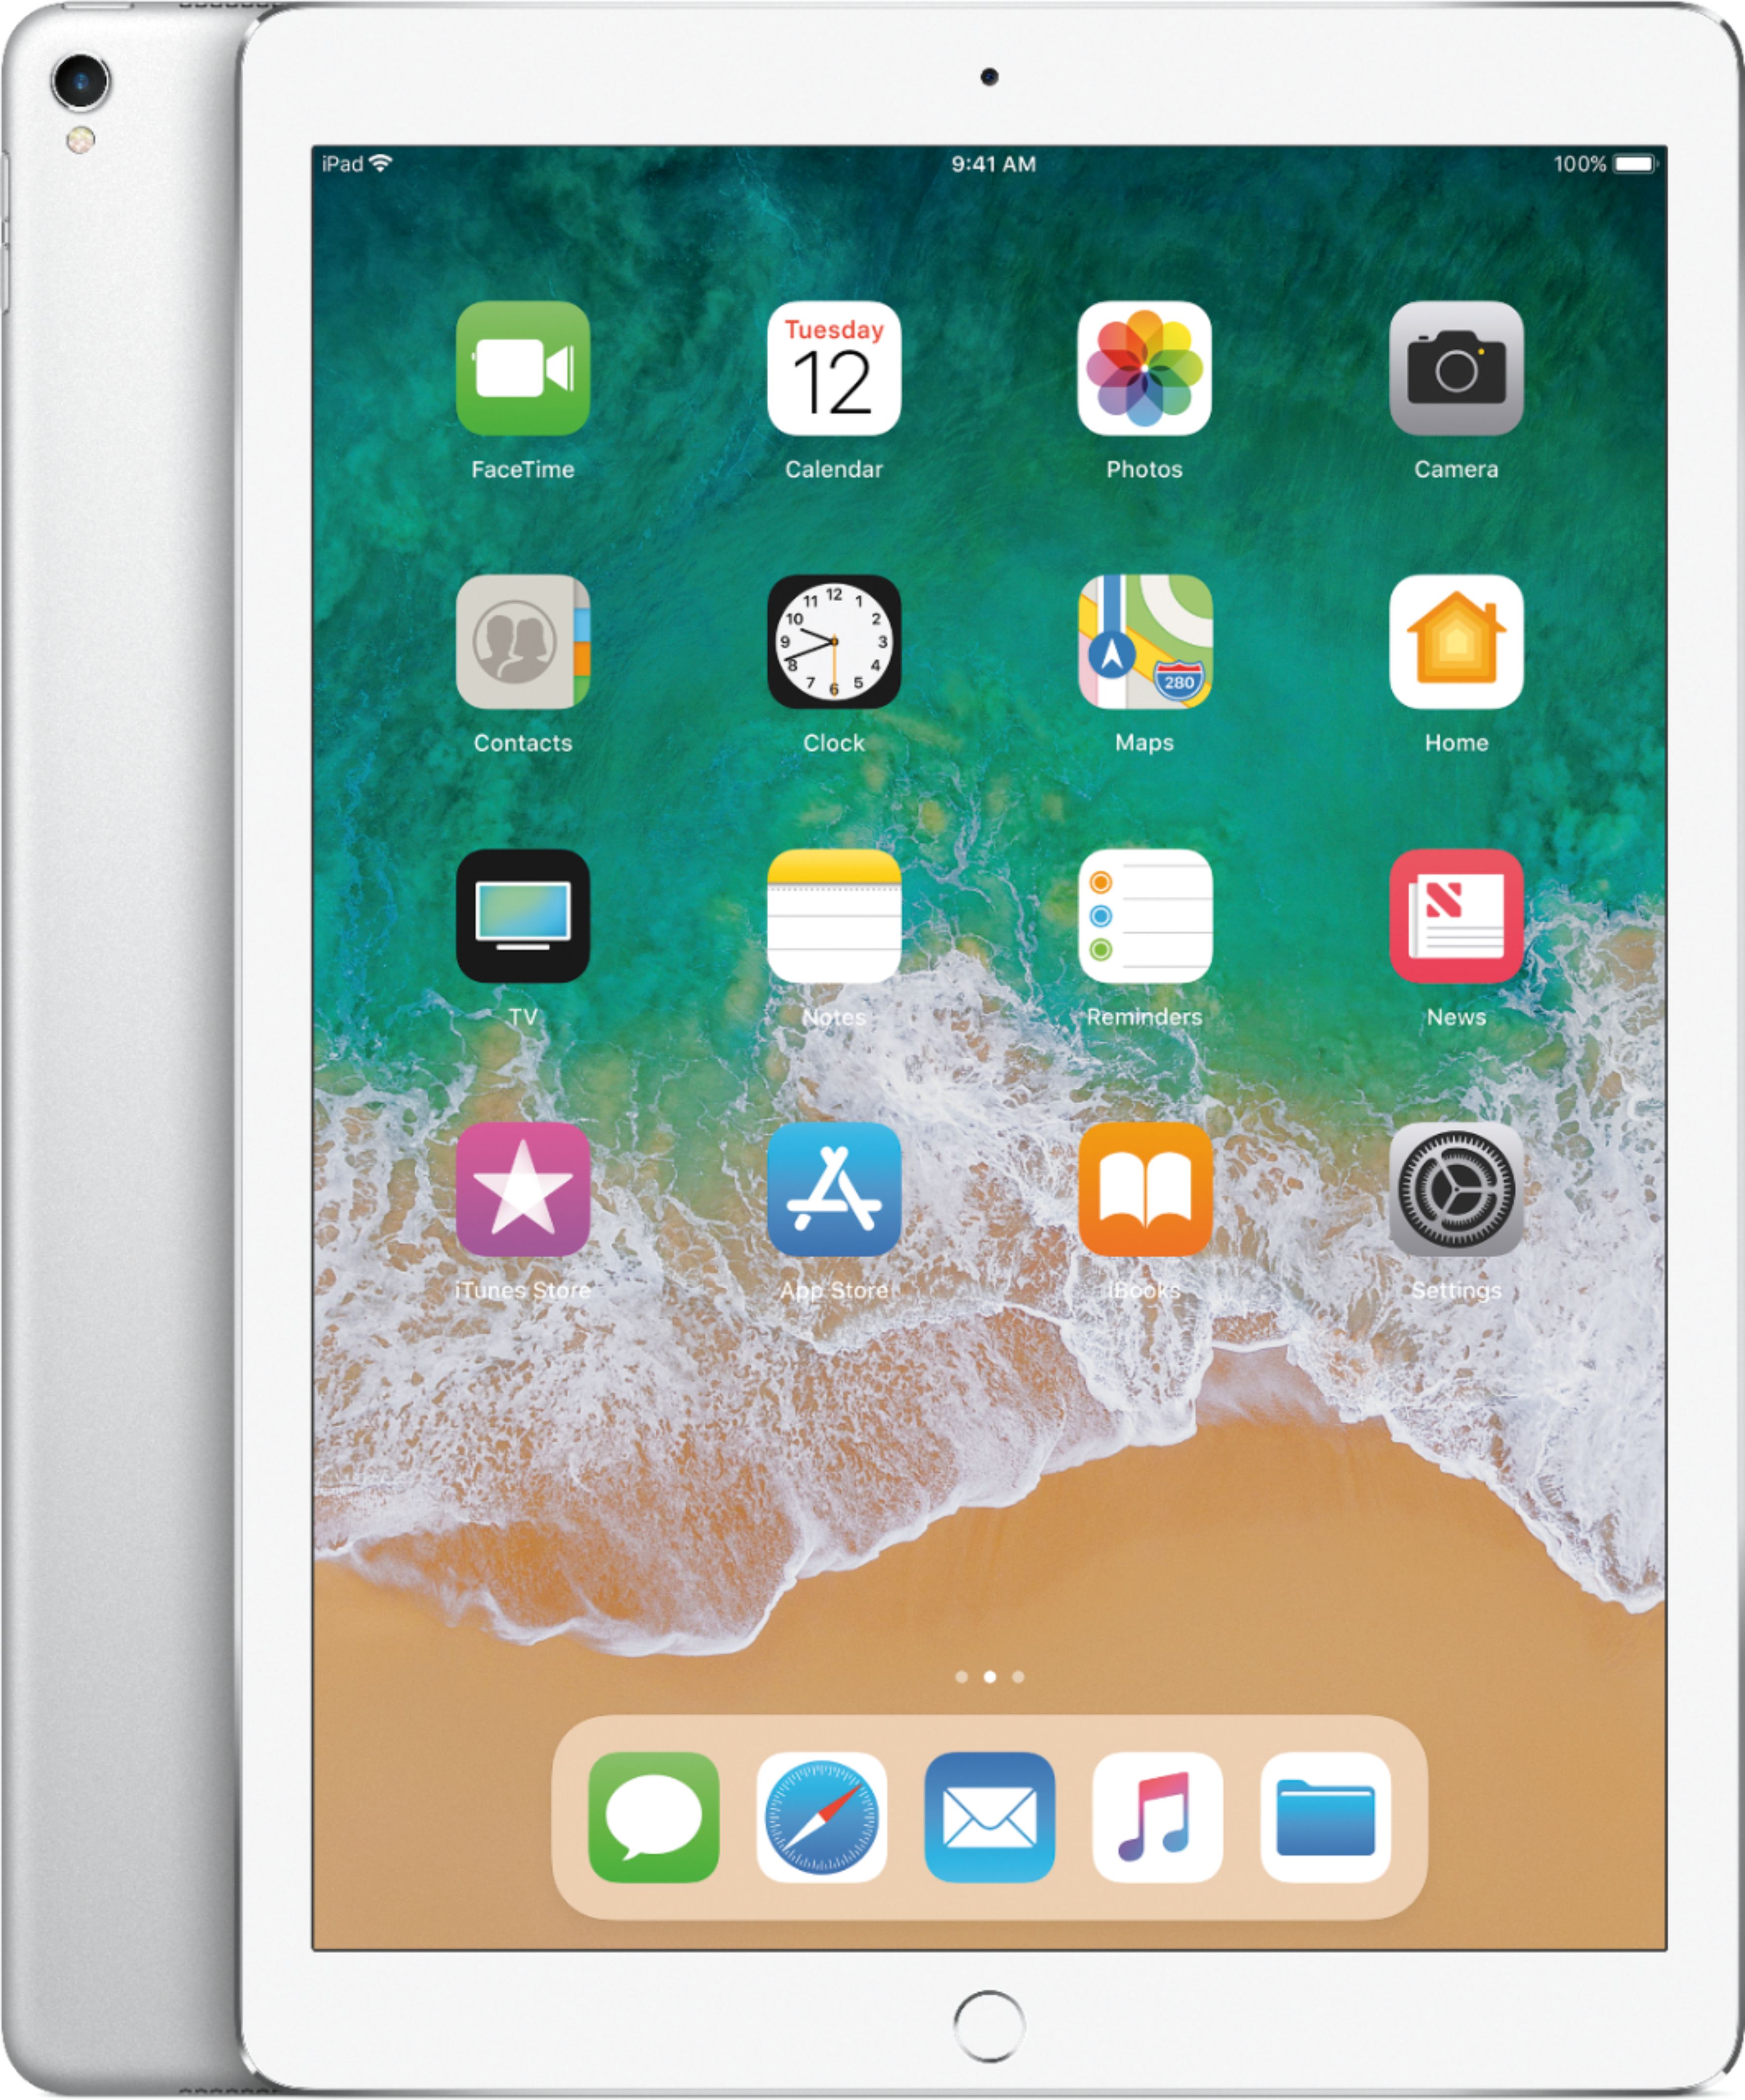 Buy 12.9-inch iPad Pro Wi-Fi 512GB - Silver - Apple